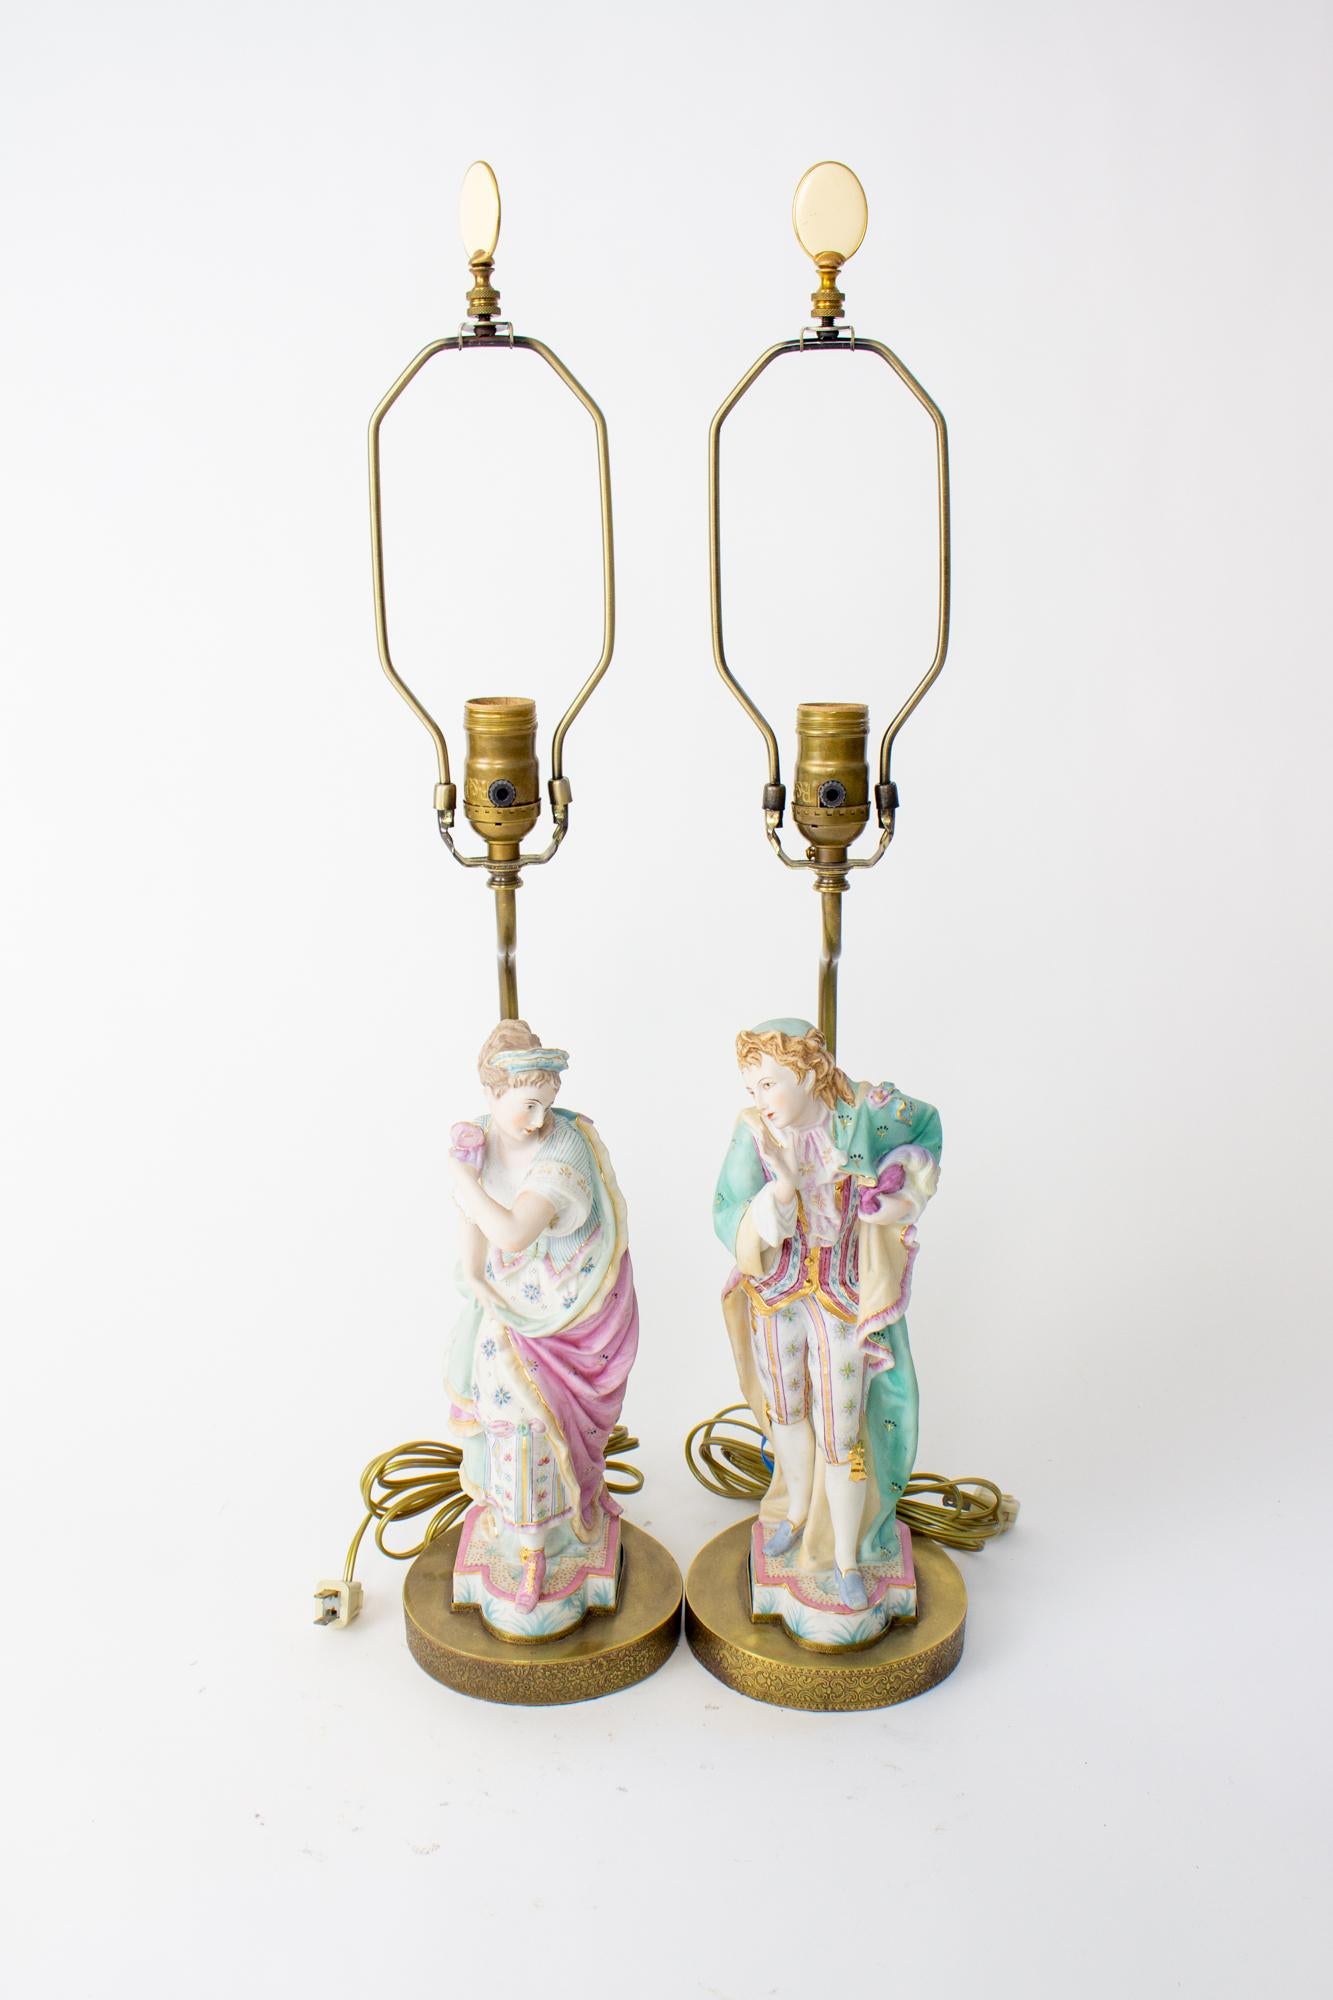 Lampes à figurines en biscuit de mascarade du milieu du 20e siècle. Une paire représentant un homme et une femme dans des tons pastel, la femme portant une cape rose et l'homme une cape turquoise, tous deux tenant des masques qui dévoilent leurs